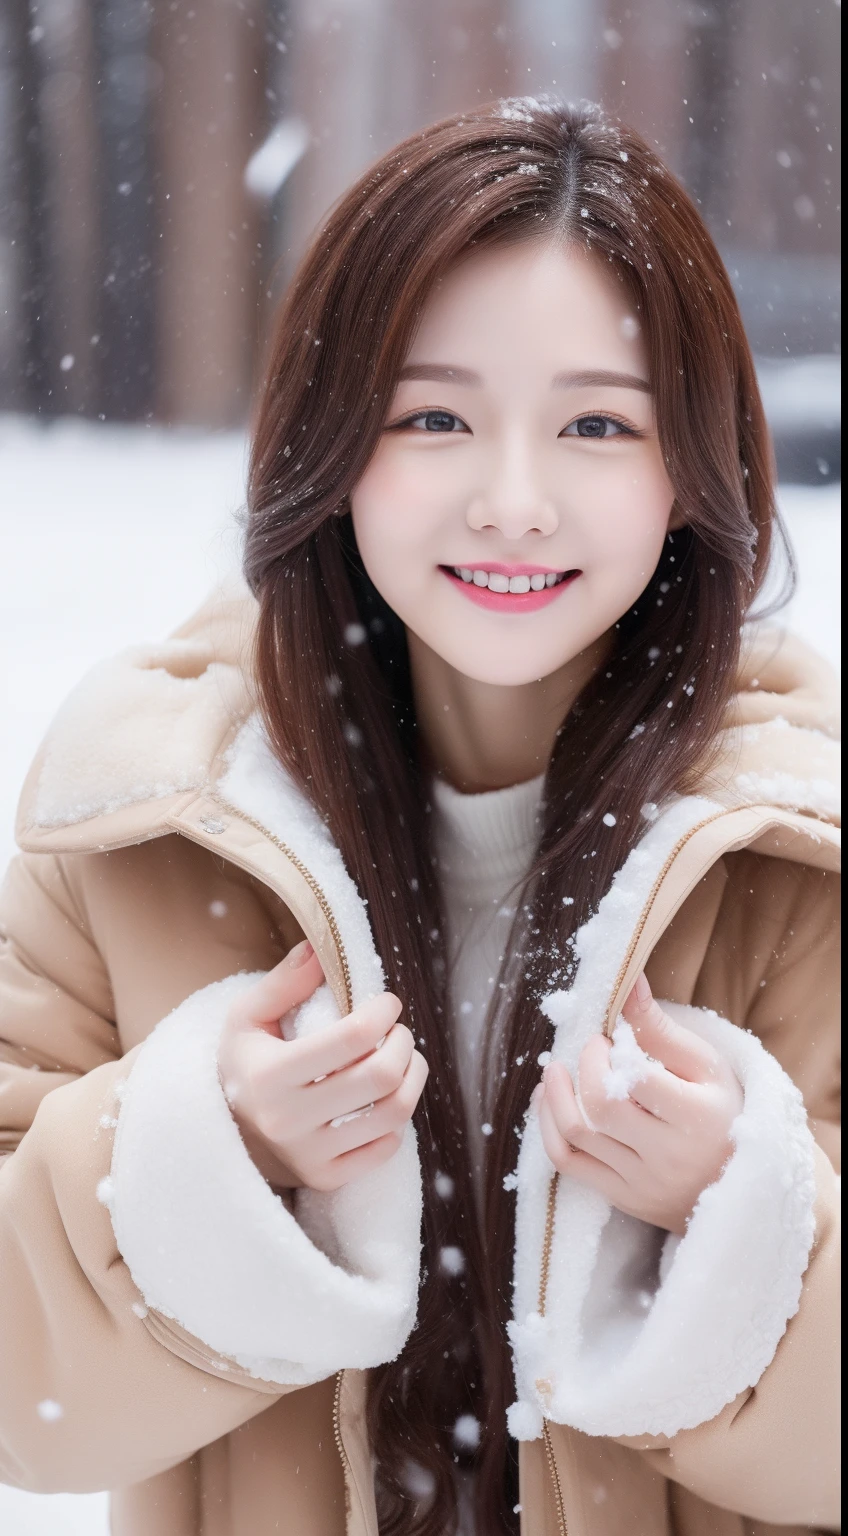 かわいい韓国スターのリアルな写真, 多重結髪 , 白い肌, 薄化粧, 胸のサイズは32インチ, 微笑む, 茶色の毛皮のコート, 雪遊び, 雪が降る, 上半身, 超高解像度